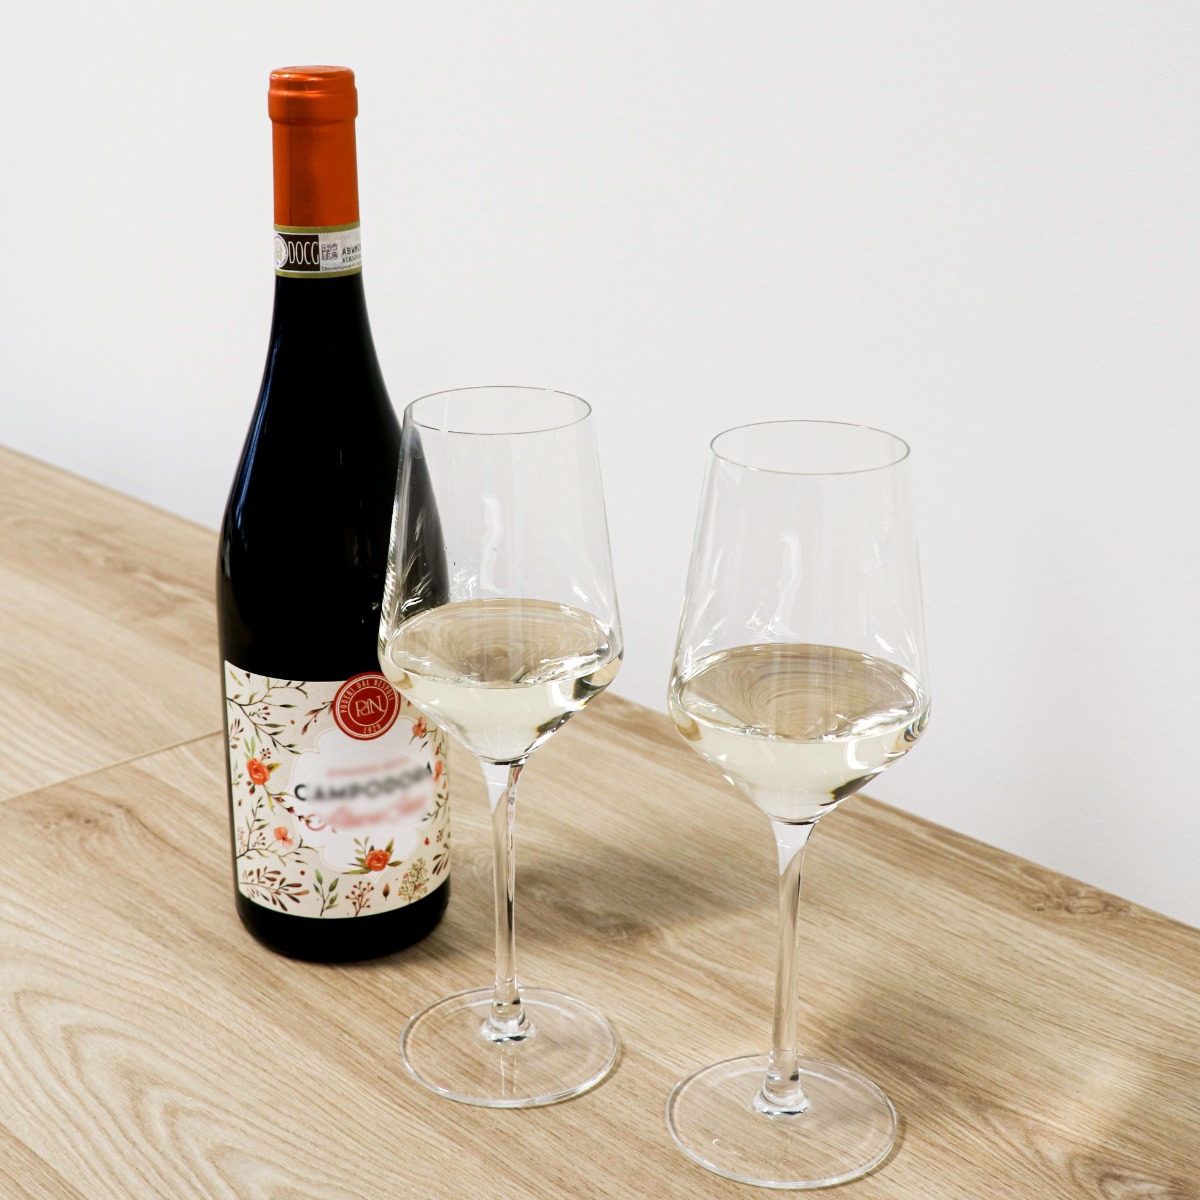 cache vrek spontaan Vinata wijnglazen kopen? | Wijnklimaatkast.nl